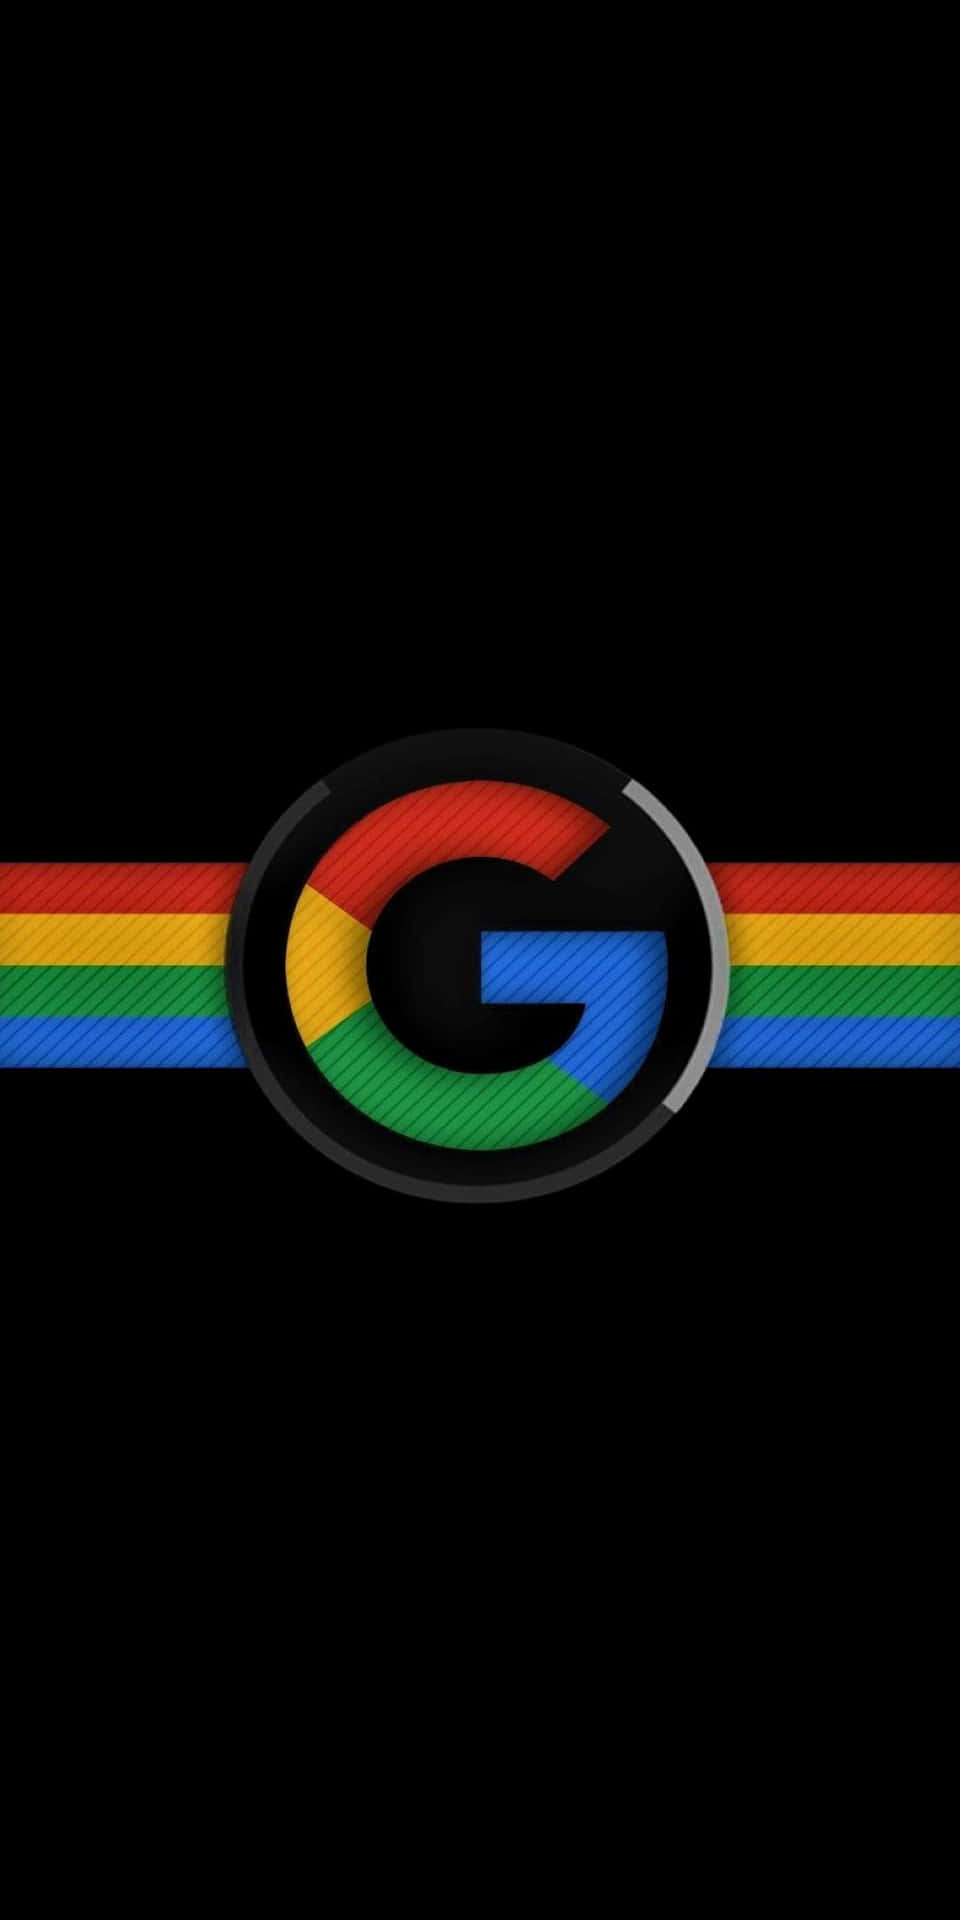 Fondode Pantalla Amoled Del Logo De Google Pixel 3.